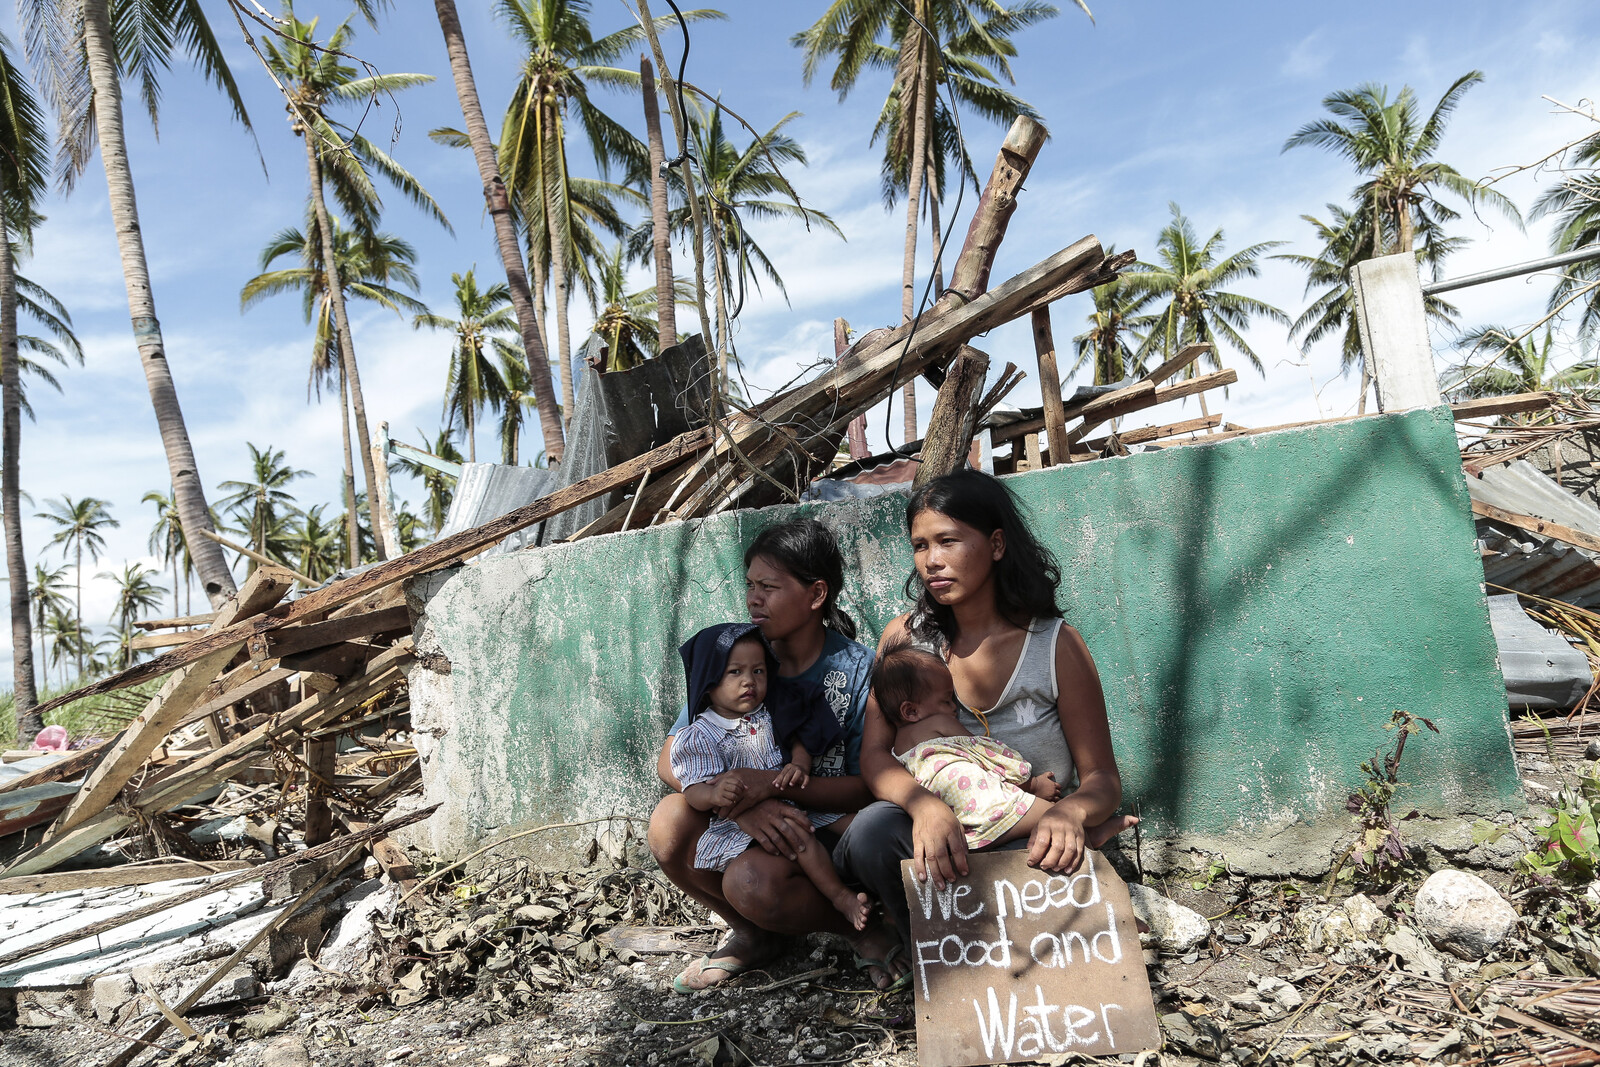 Taifun Haiyan war einer der schlimmsten je aufgezeichneten Stürme. Tausende kommen auf den Philippinen ums Leben